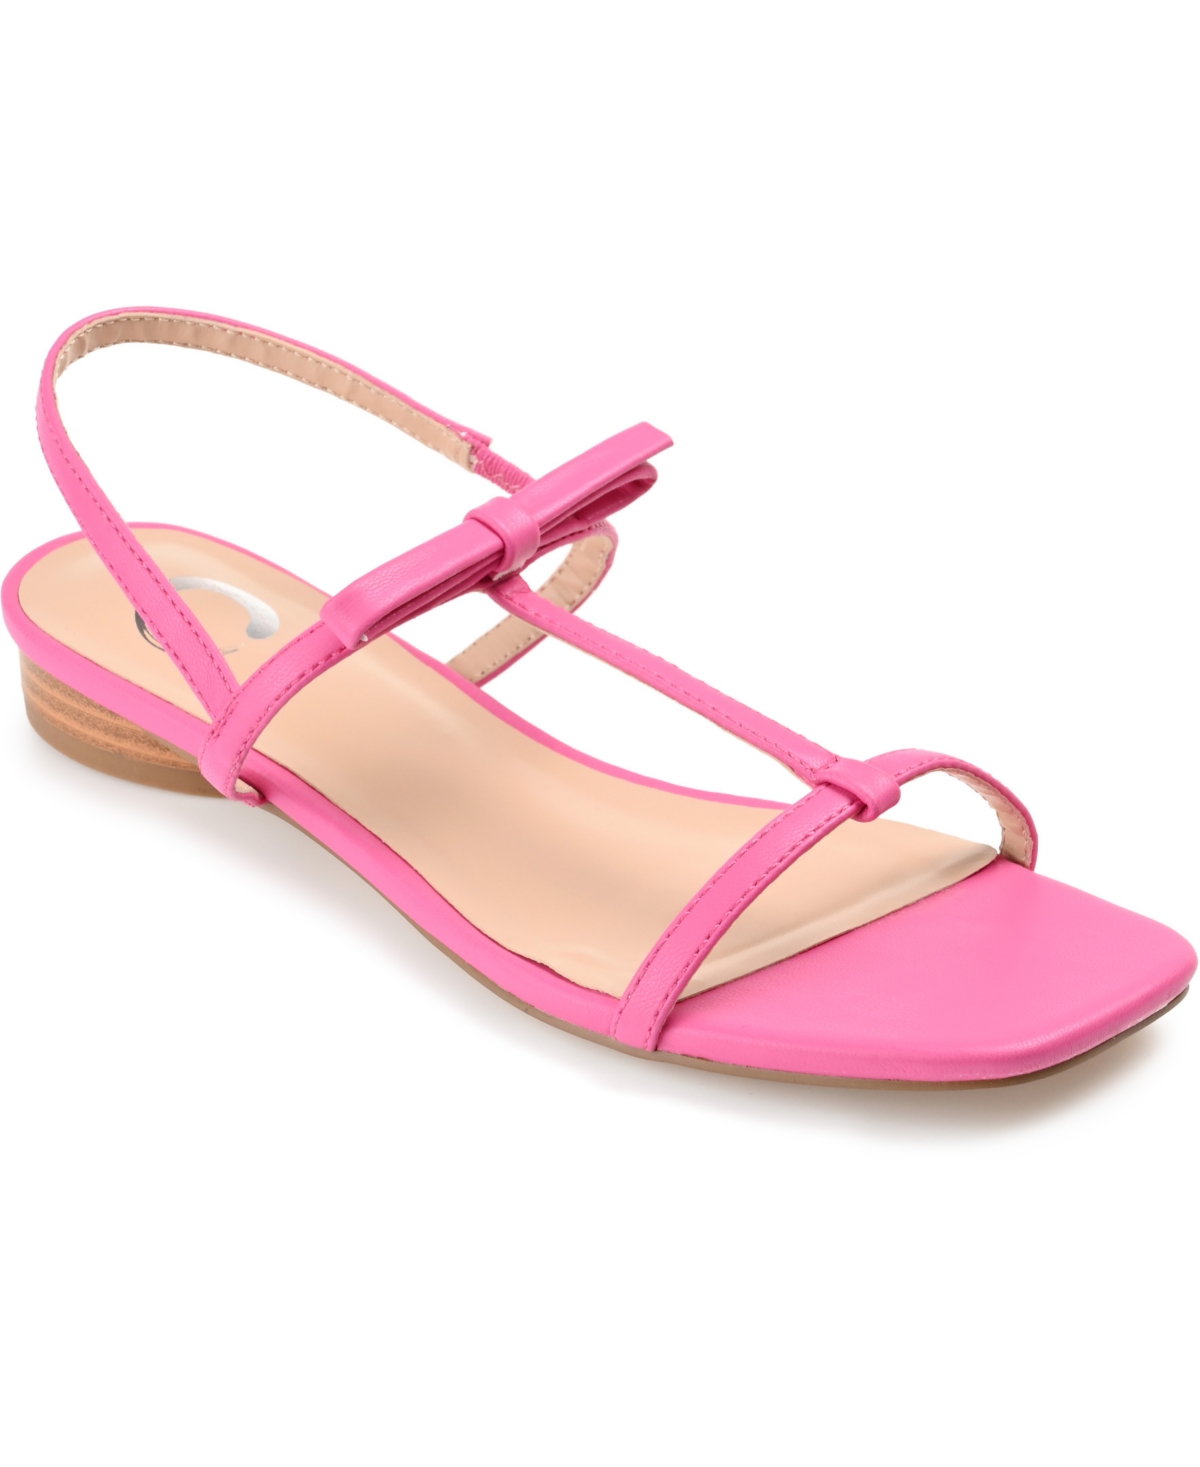 Women's Zaidda T Strap Flat Sandals - Tan